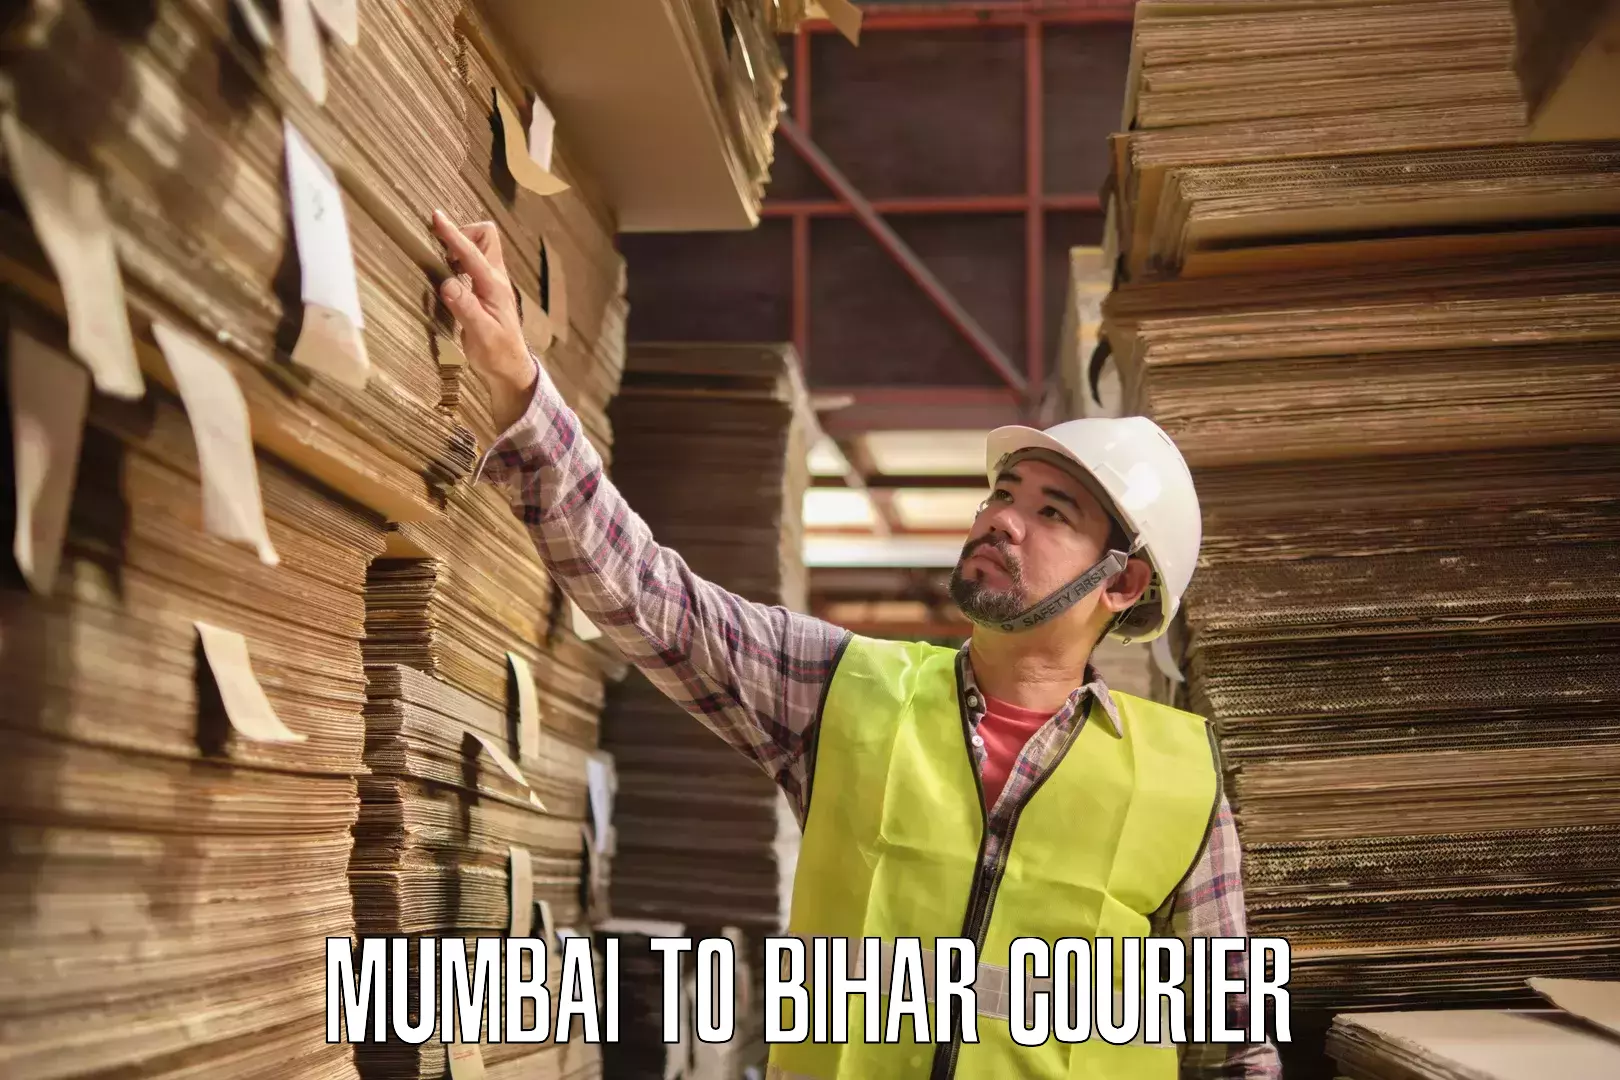 Quick dispatch service Mumbai to Bihar